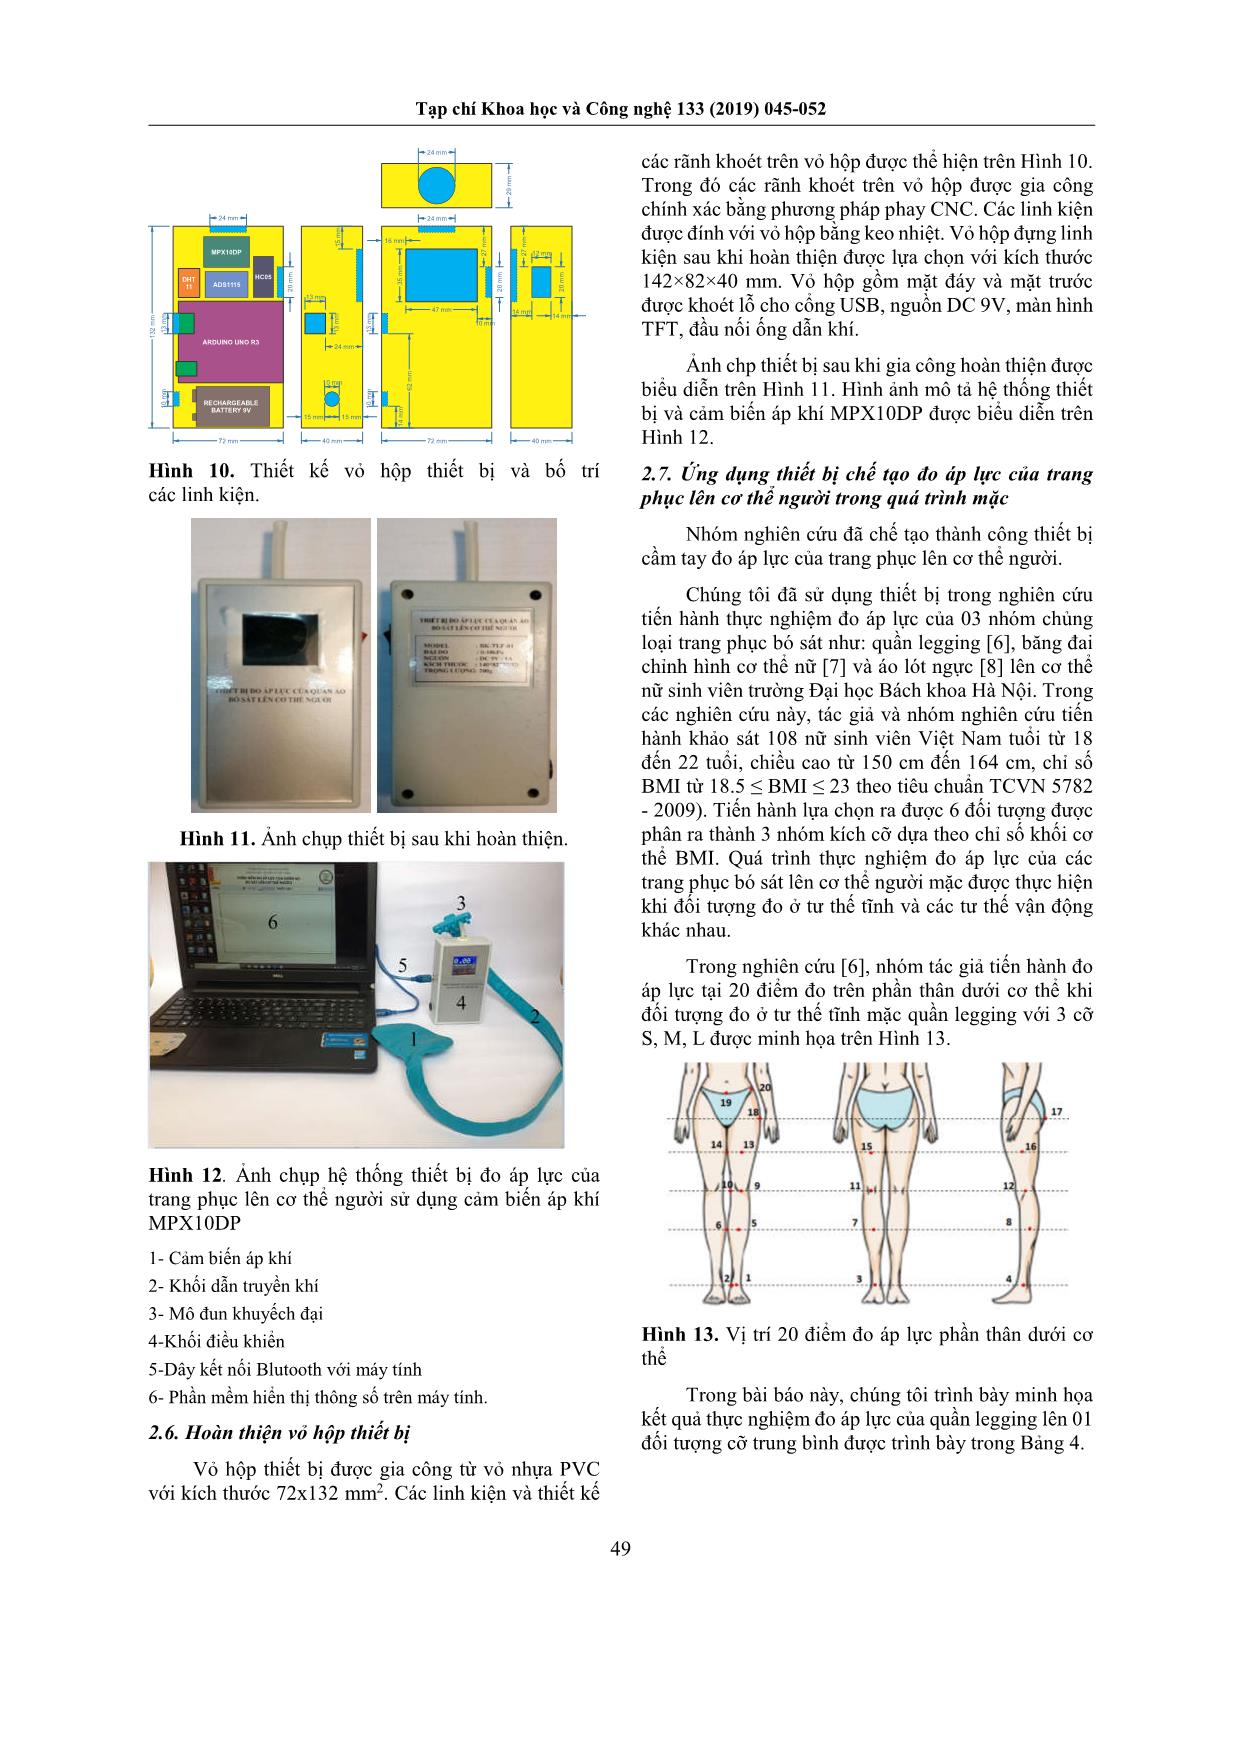 Thiết kế, chế tạo thiết bị cầm tay đo áp lực của trang phục lên cơ thể người sử dụng cảm biến áp khí MPX10DP trang 5